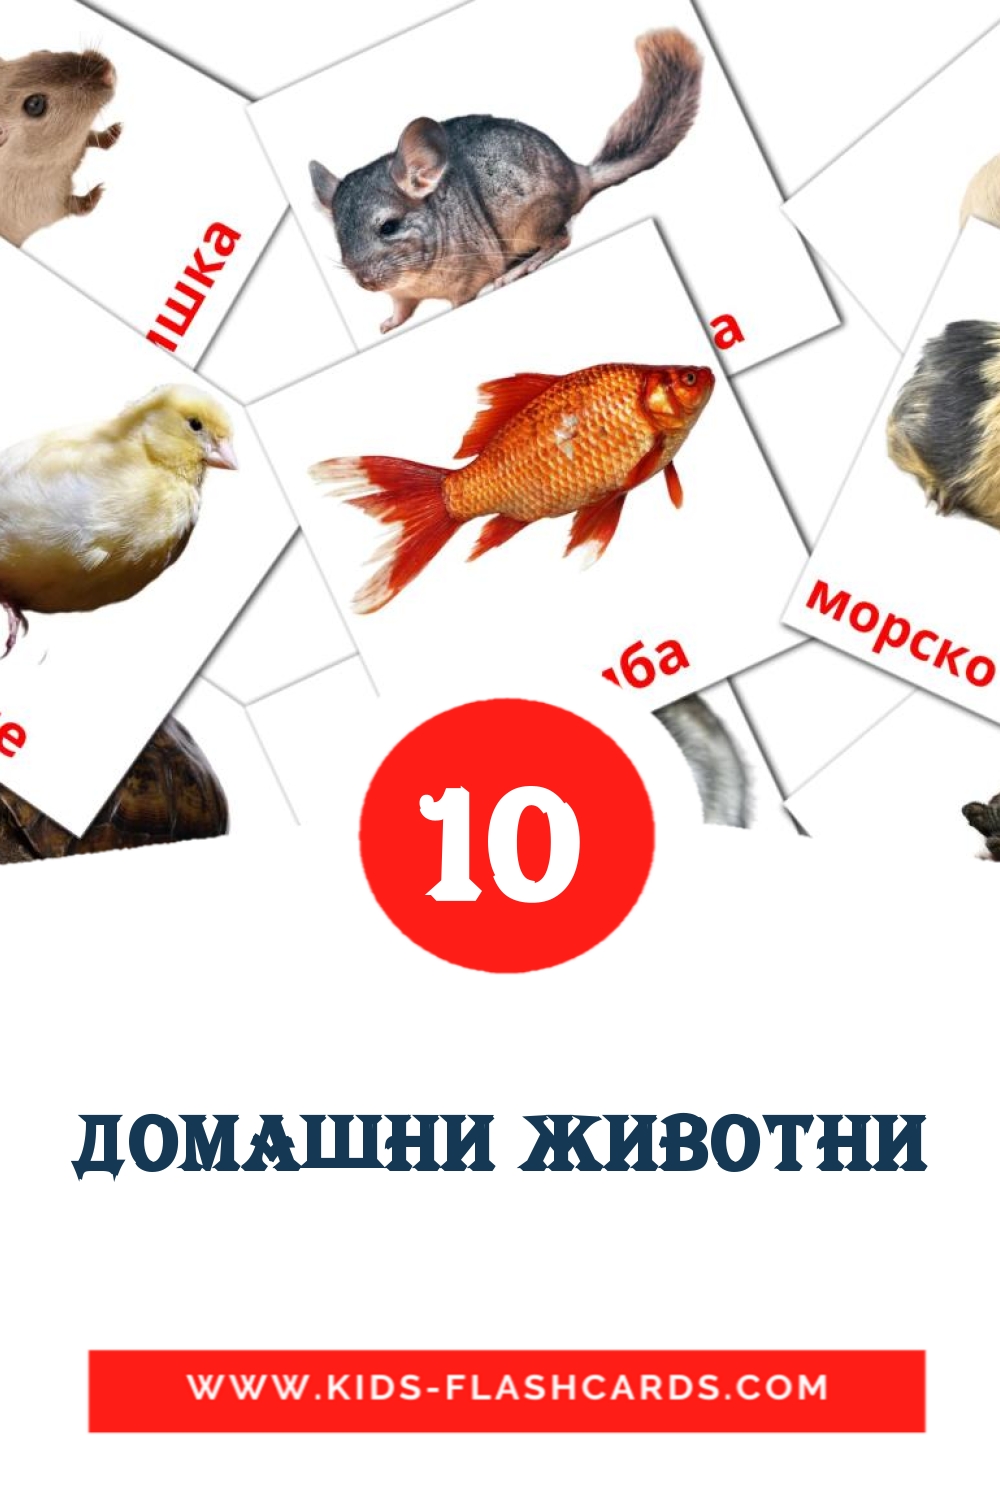 10 cartes illustrées de Домашни животни pour la maternelle en bashkir